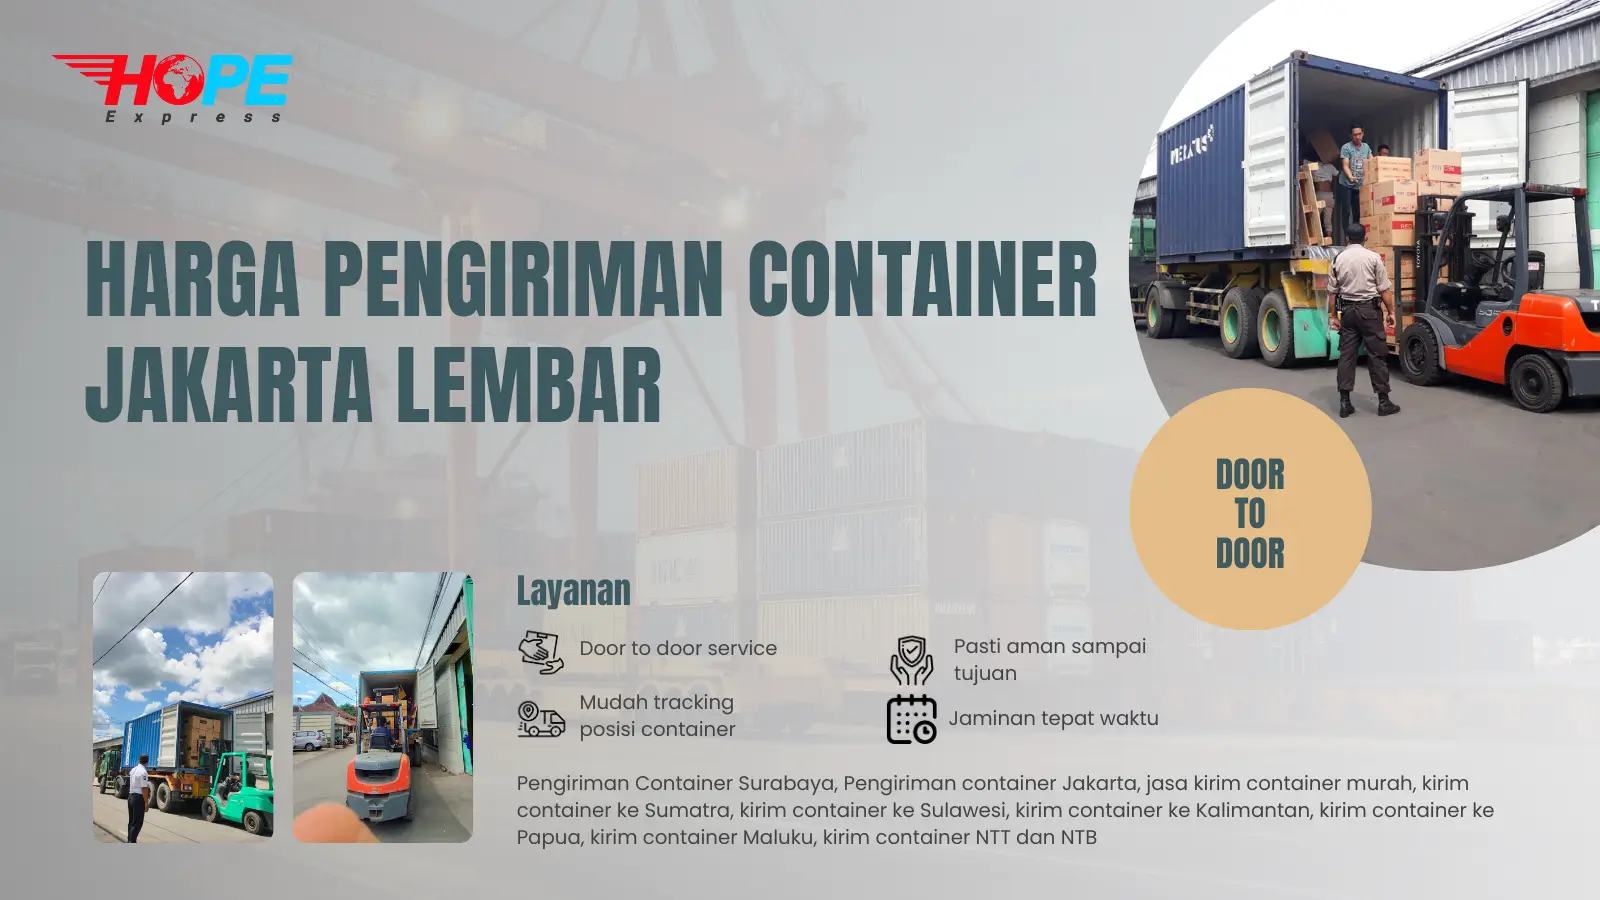 Harga Pengiriman container Jakarta Lembar